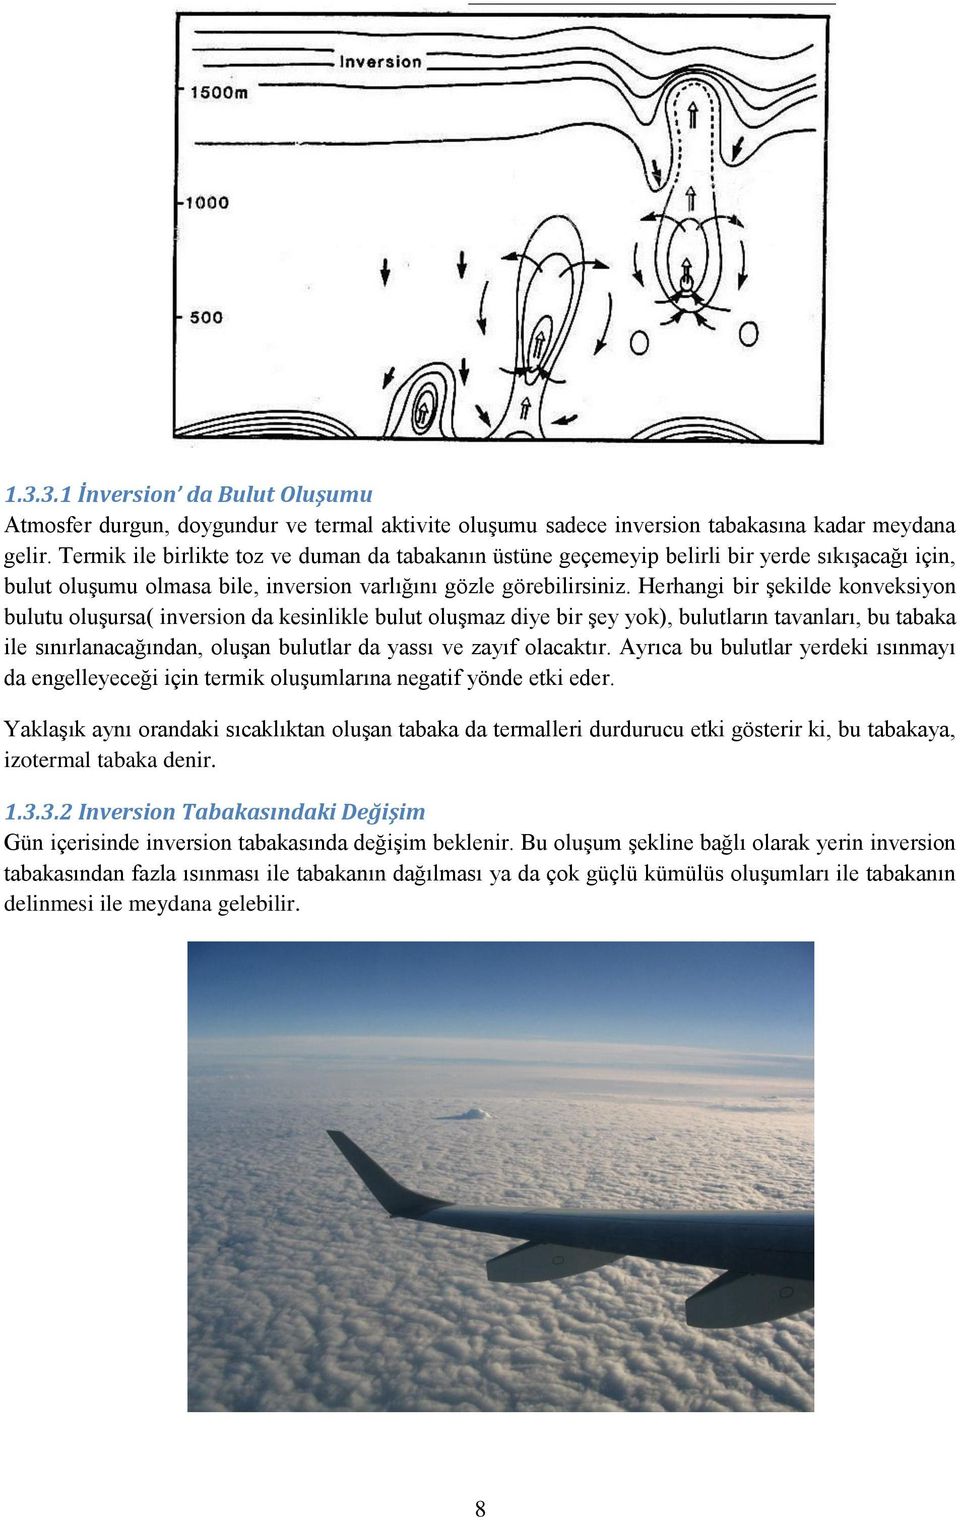 Herhangi bir şekilde konveksiyon bulutu oluşursa( inversion da kesinlikle bulut oluşmaz diye bir şey yok), bulutların tavanları, bu tabaka ile sınırlanacağından, oluşan bulutlar da yassı ve zayıf